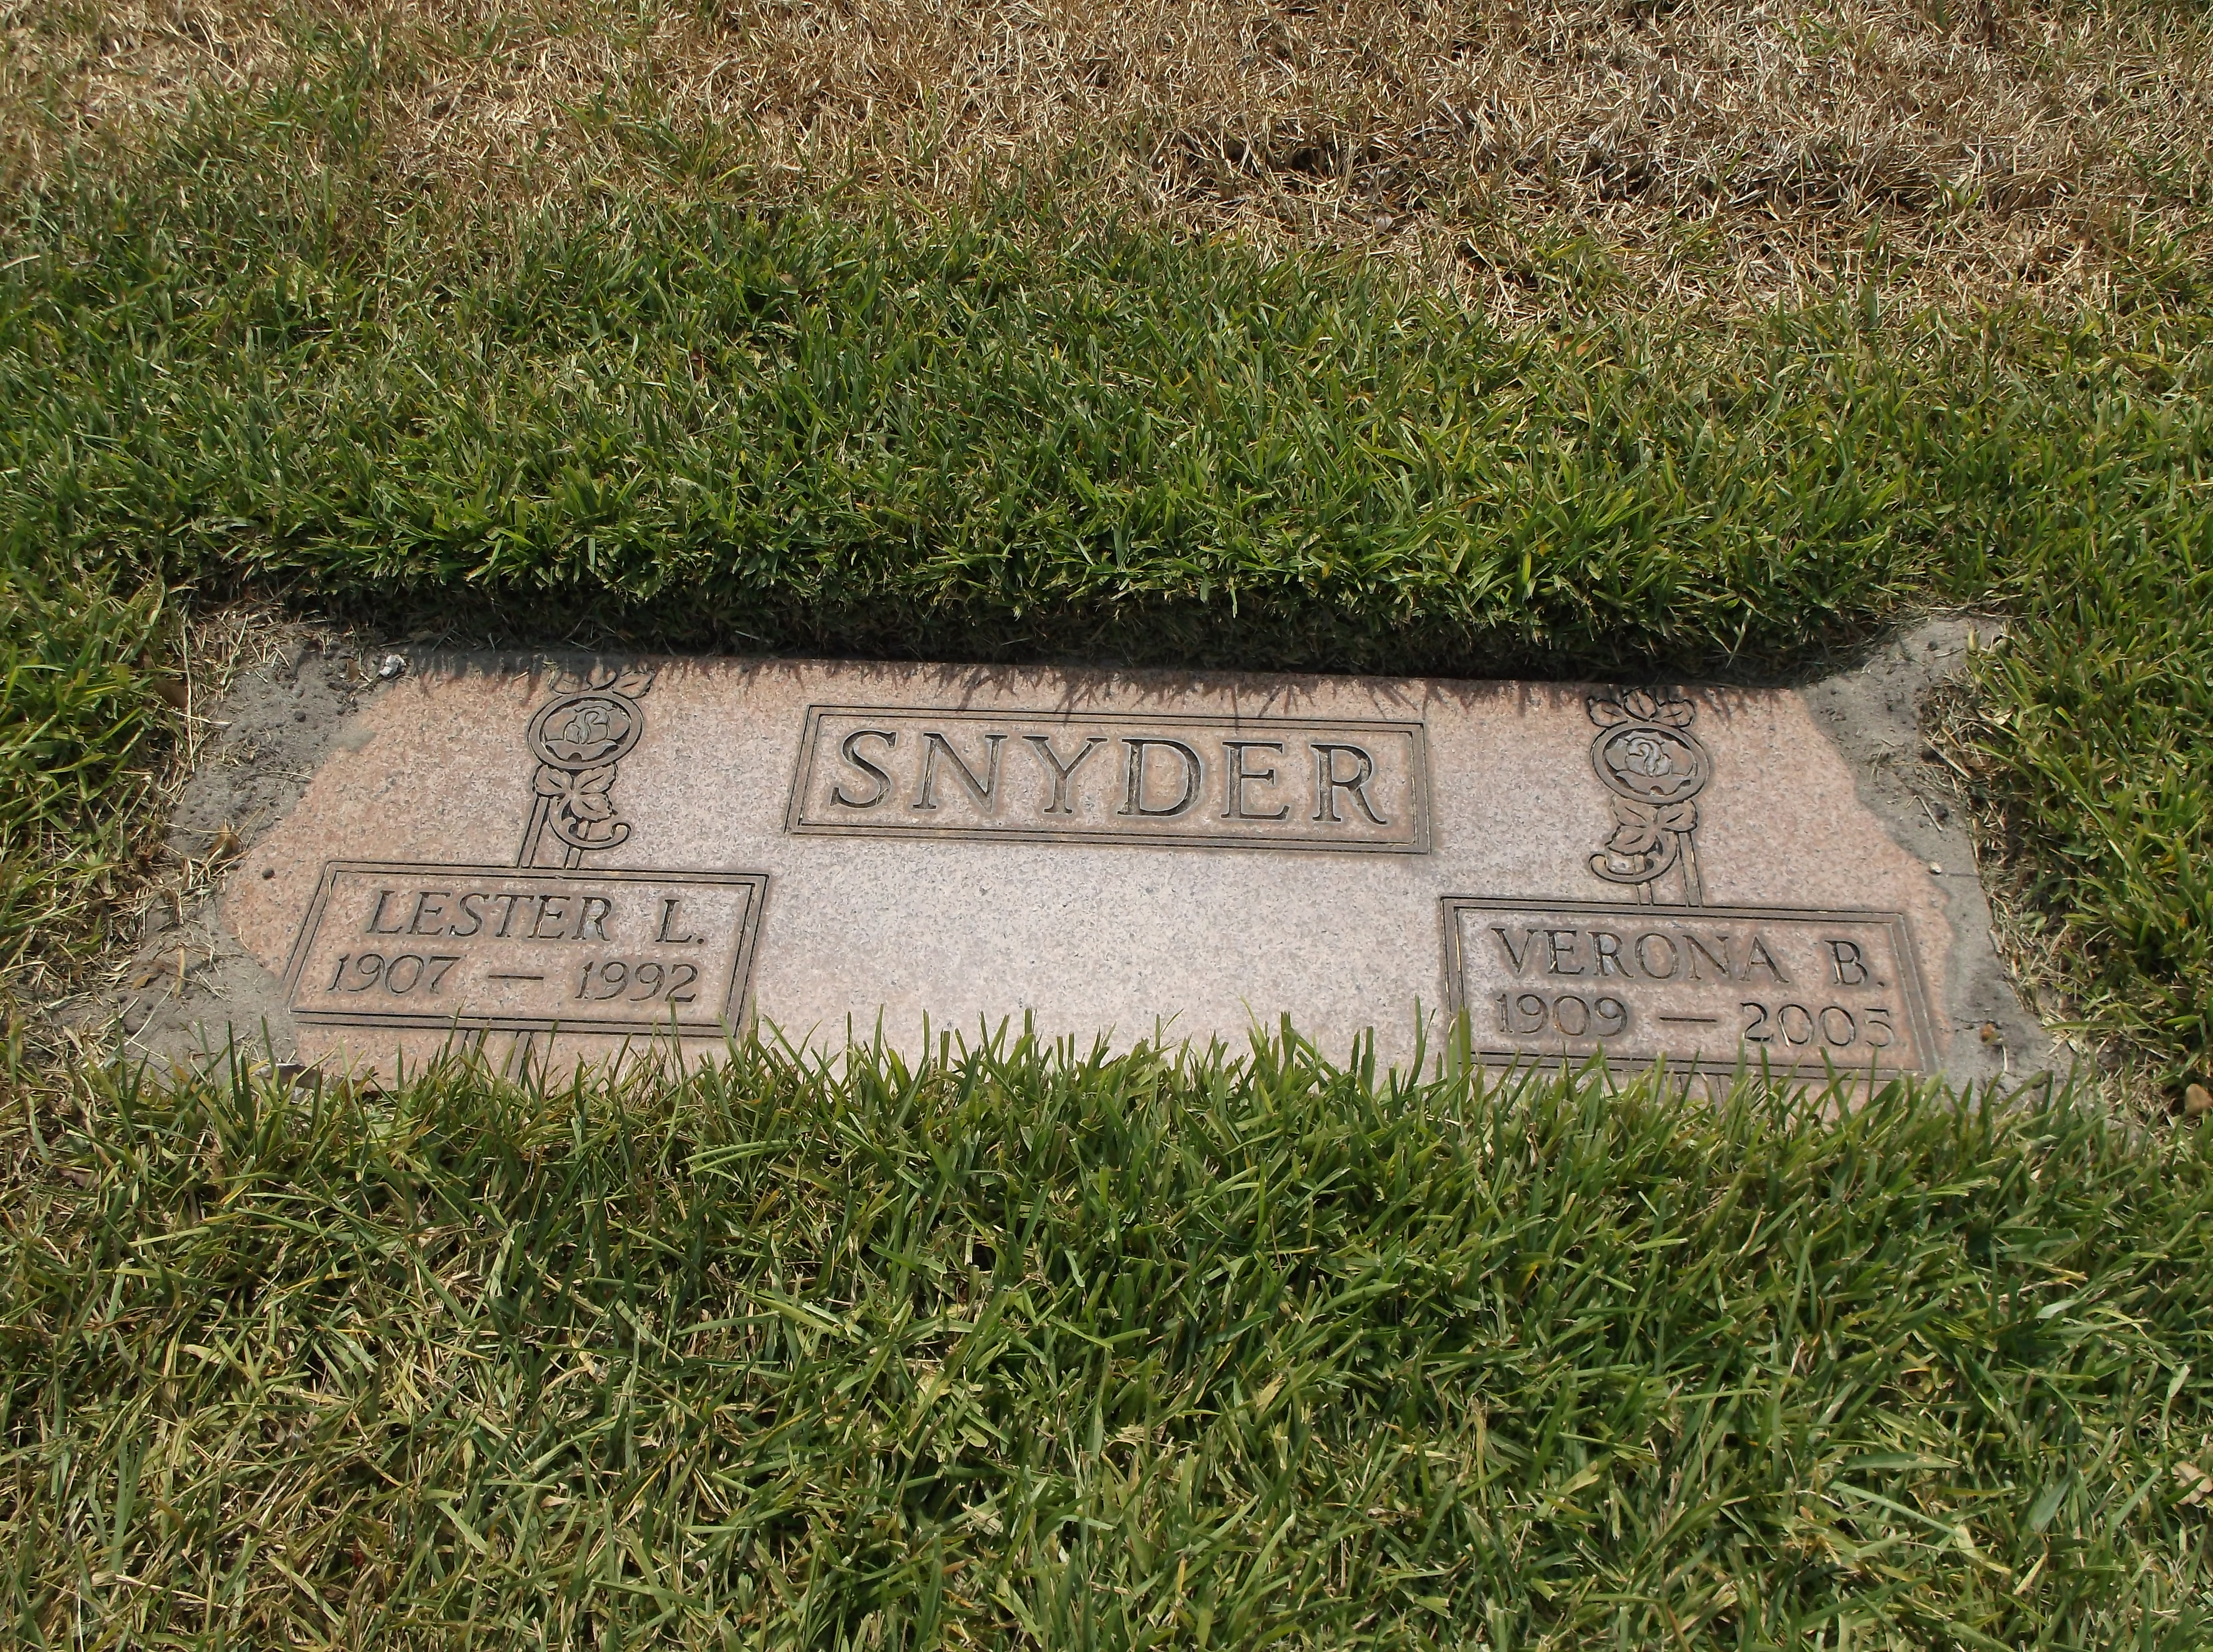 Lester L Snyder